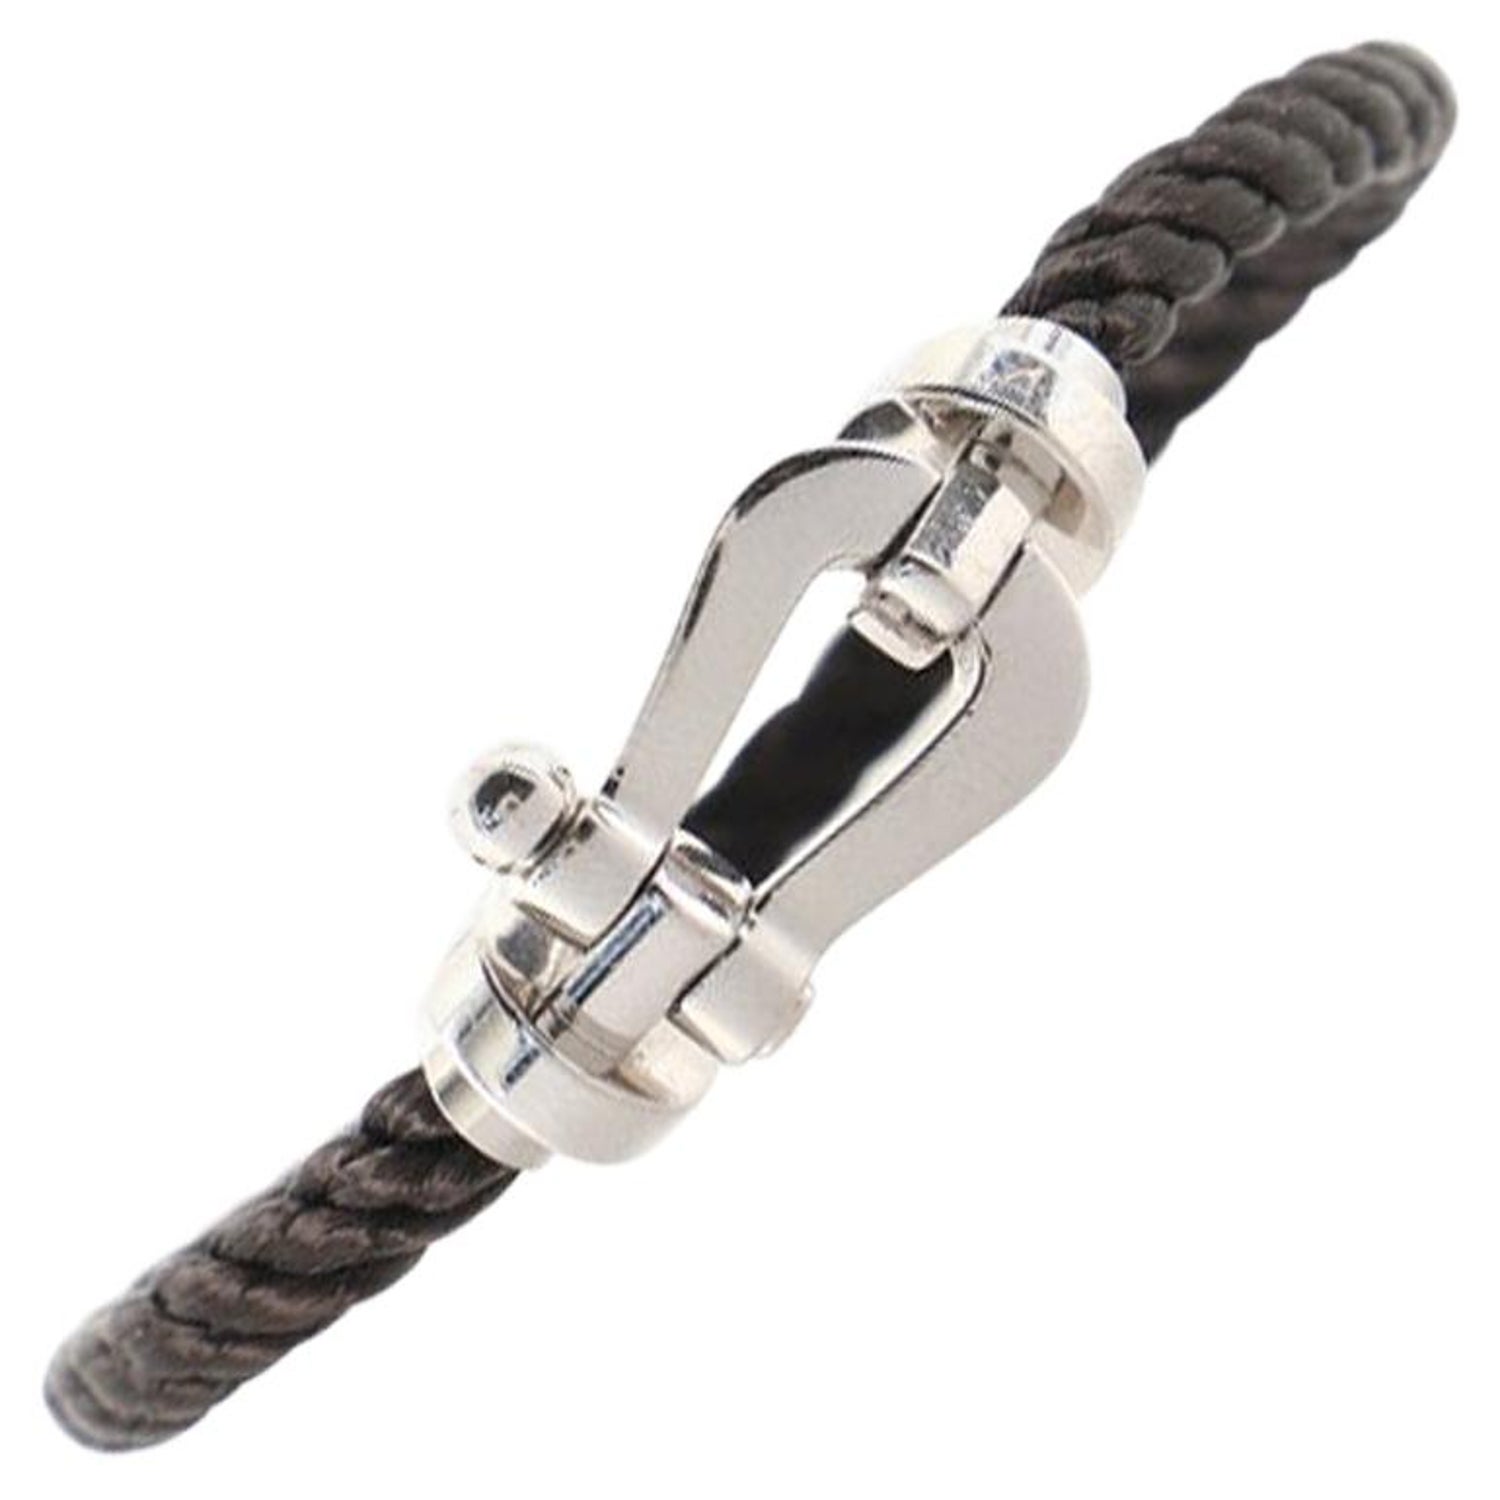 Bracelet Fred Force 10 - 2 For Sale on 1stDibs  fred force 10 bracelet  price, fred force 10 price, fred bracelet